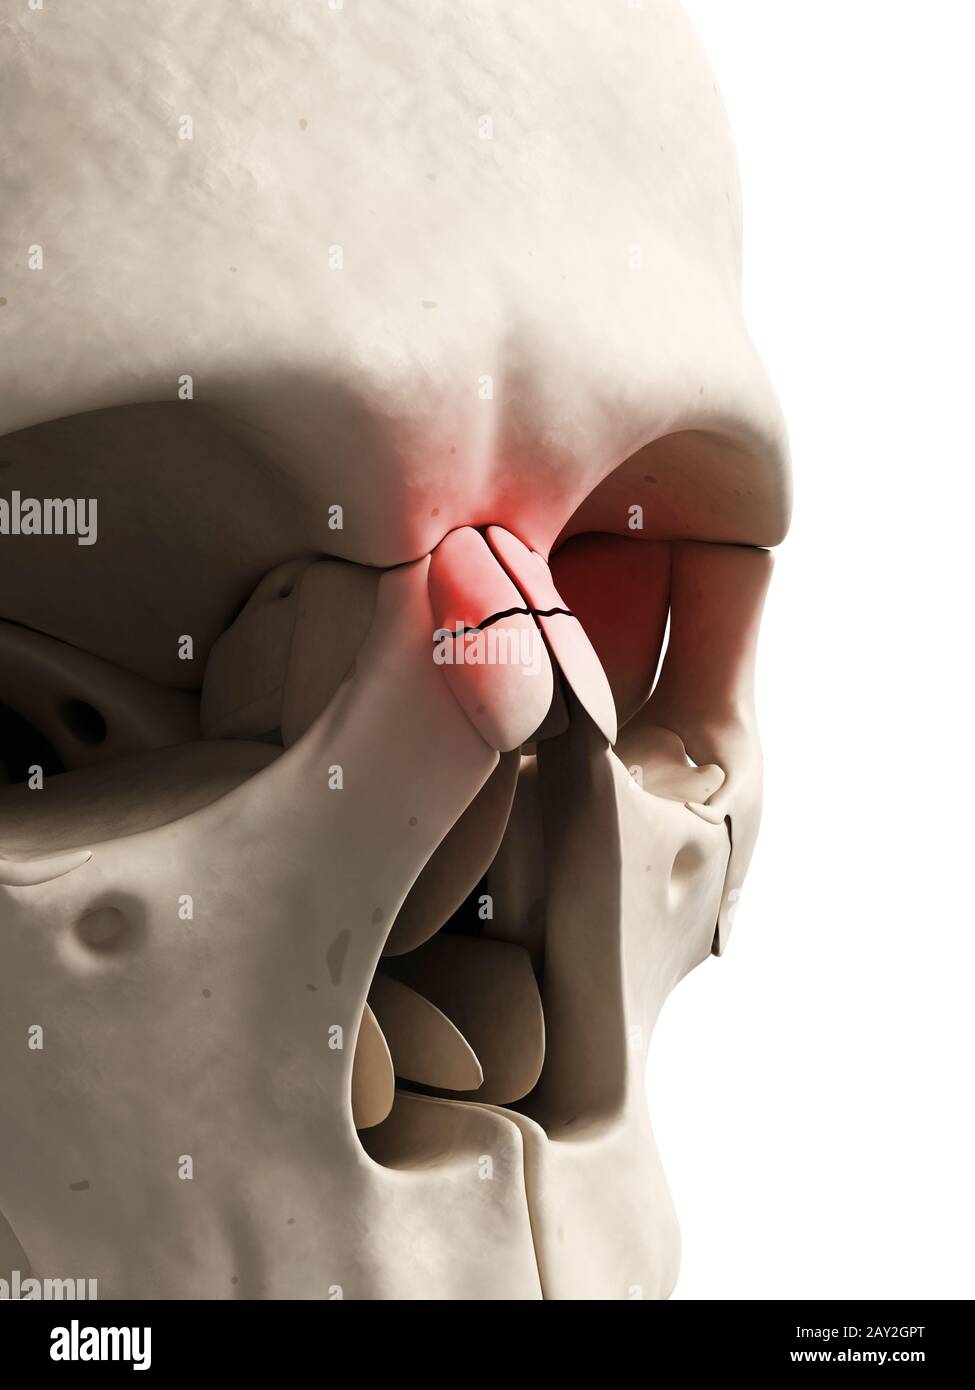 Illustration médicale d'un nez cassé Banque D'Images